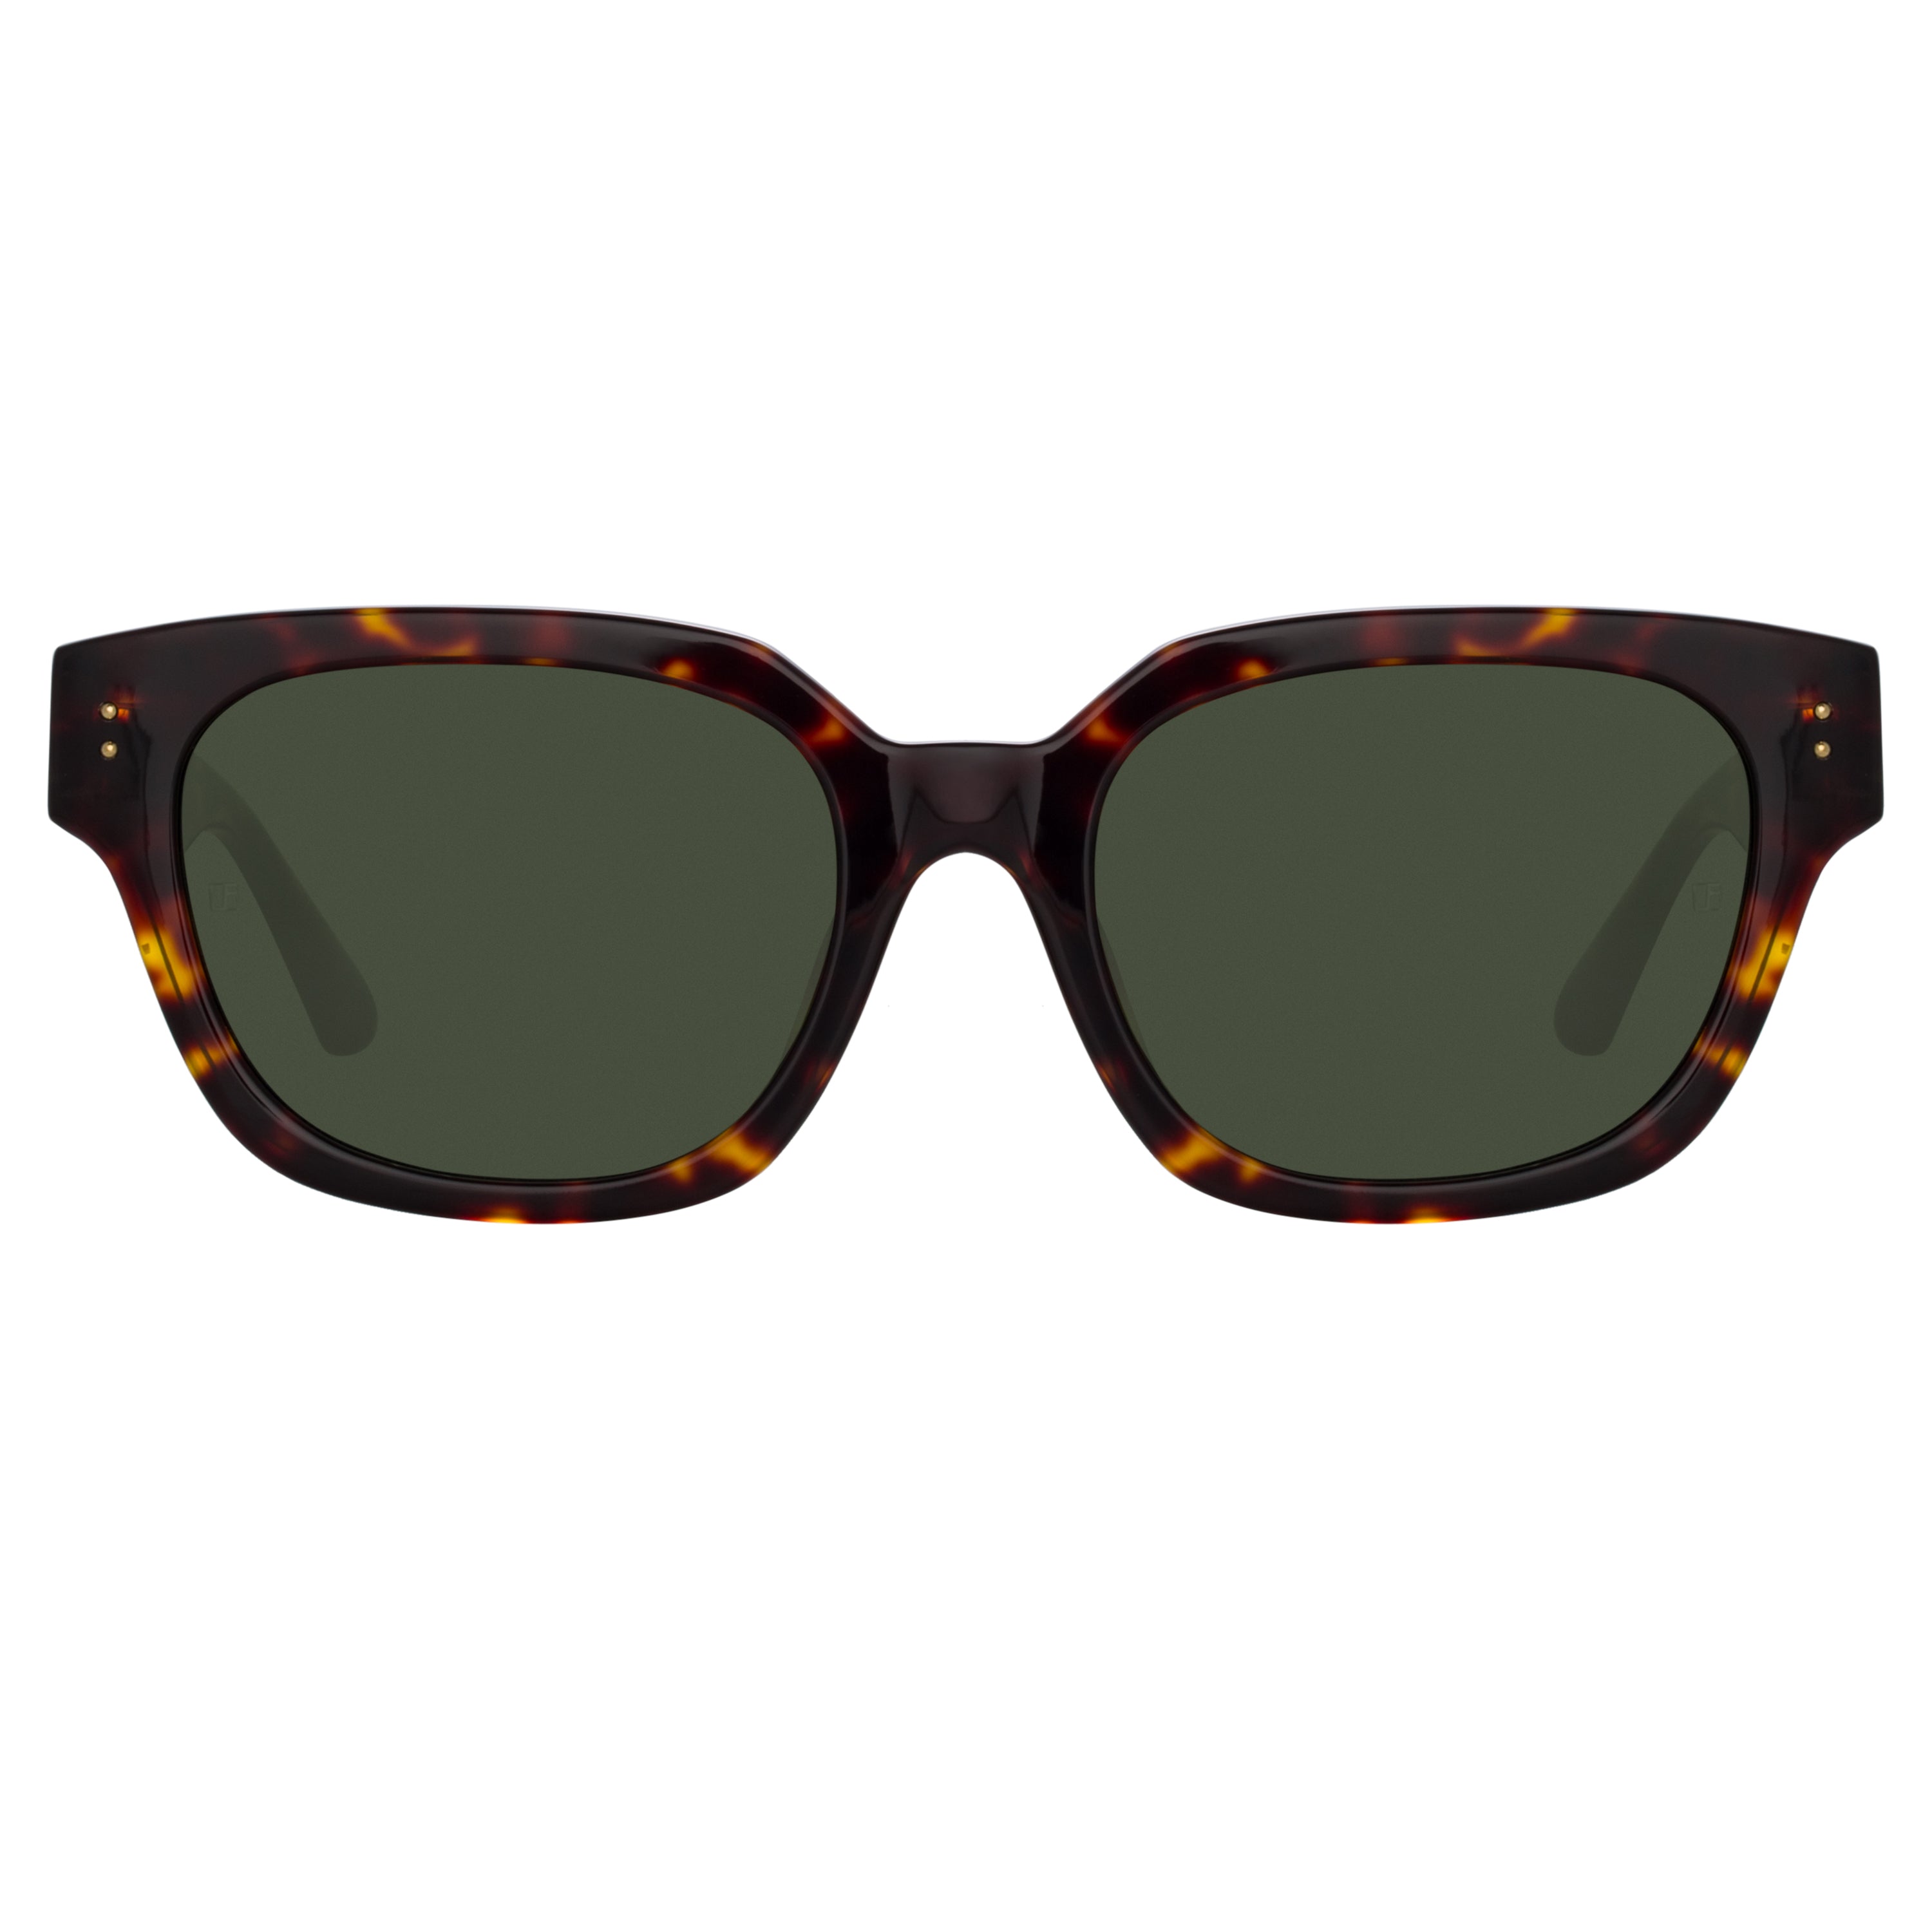 Deni D-Frame Sunglasses in Tortoiseshell